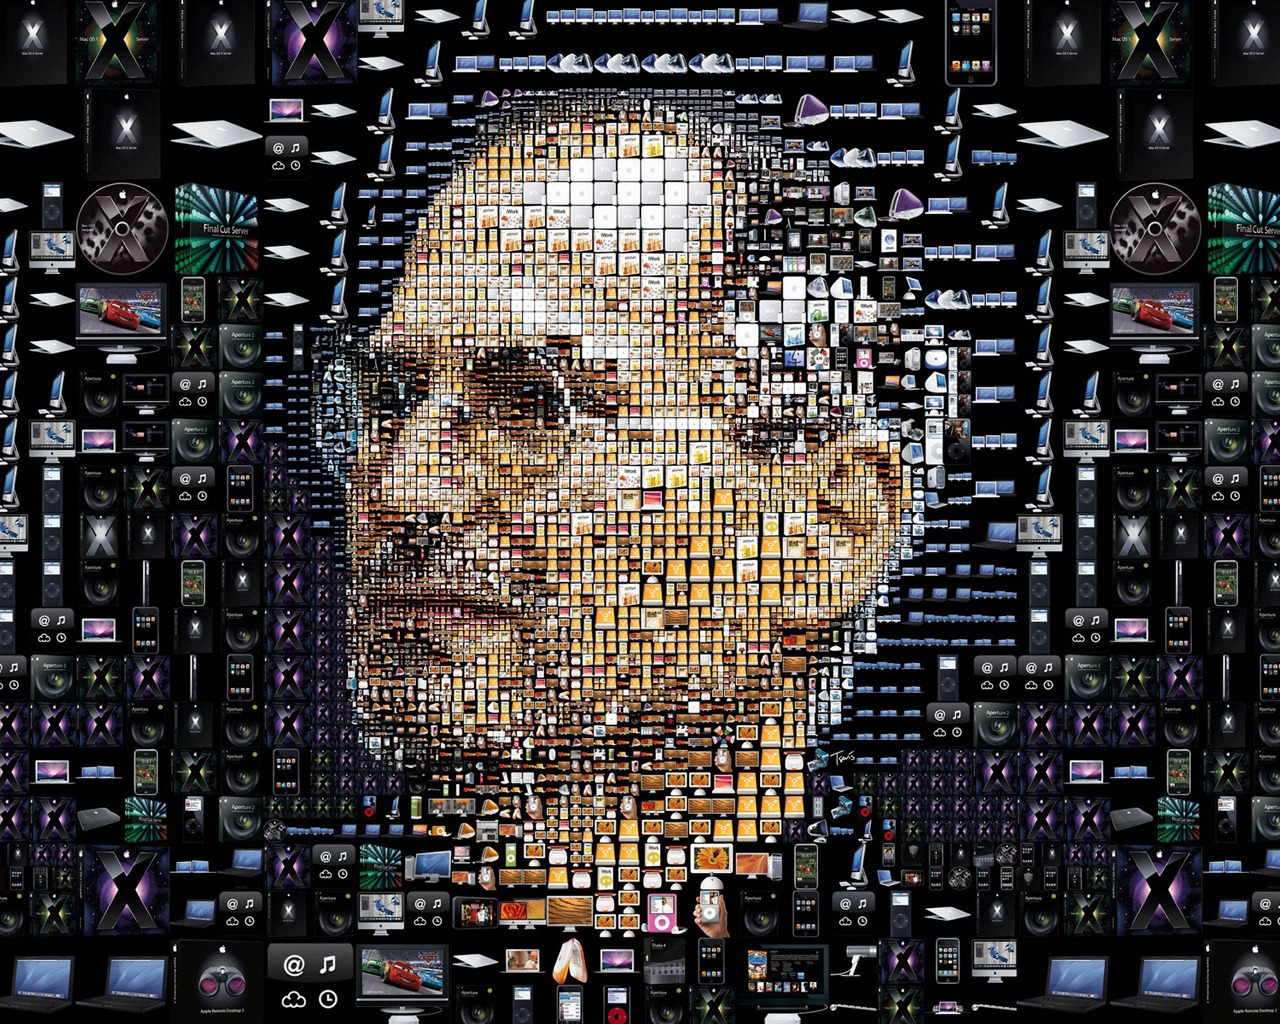 Steve Jobs for 1280 x 1024 resolution